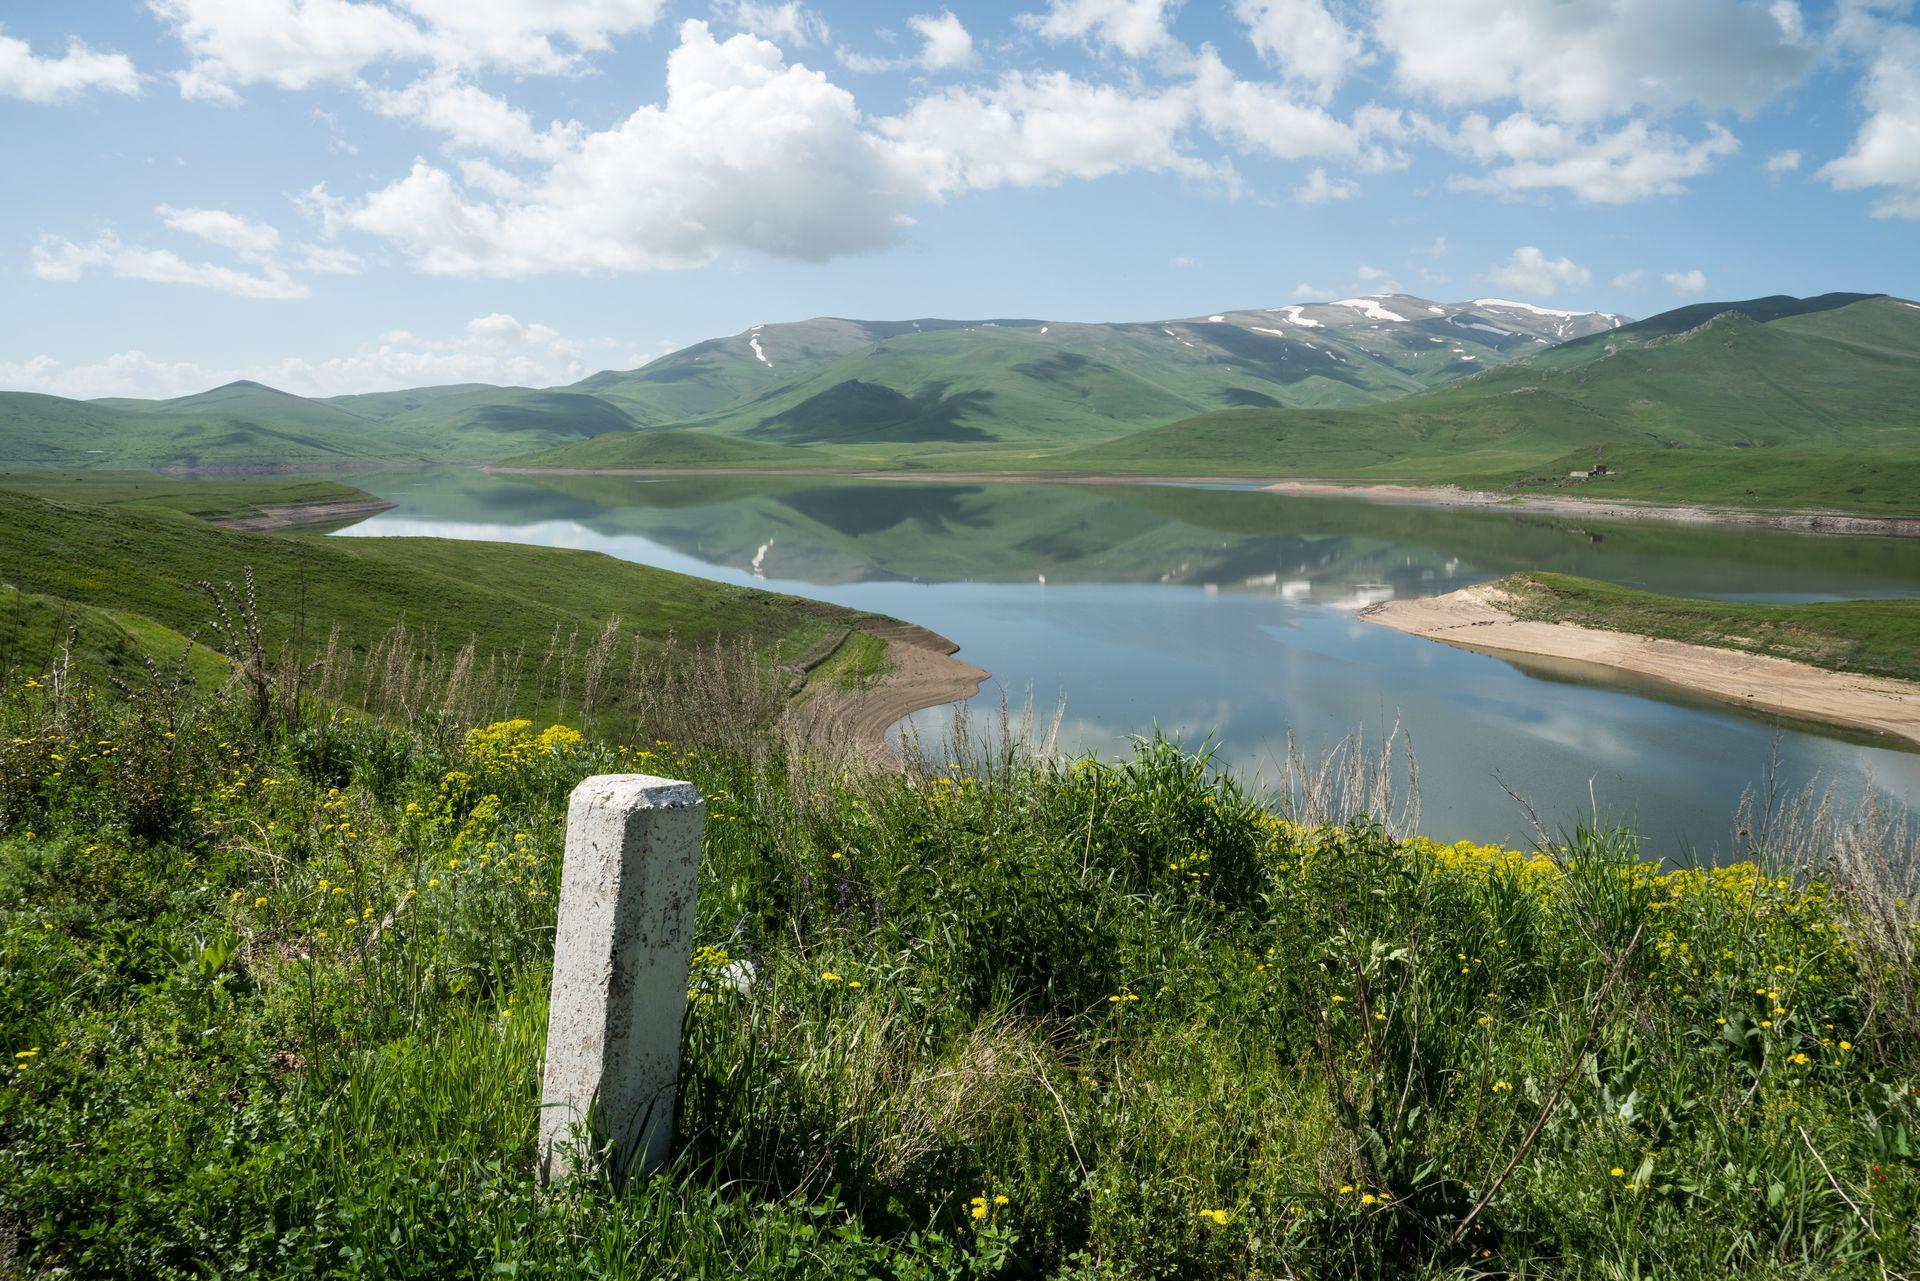 Nagorny-Karabach